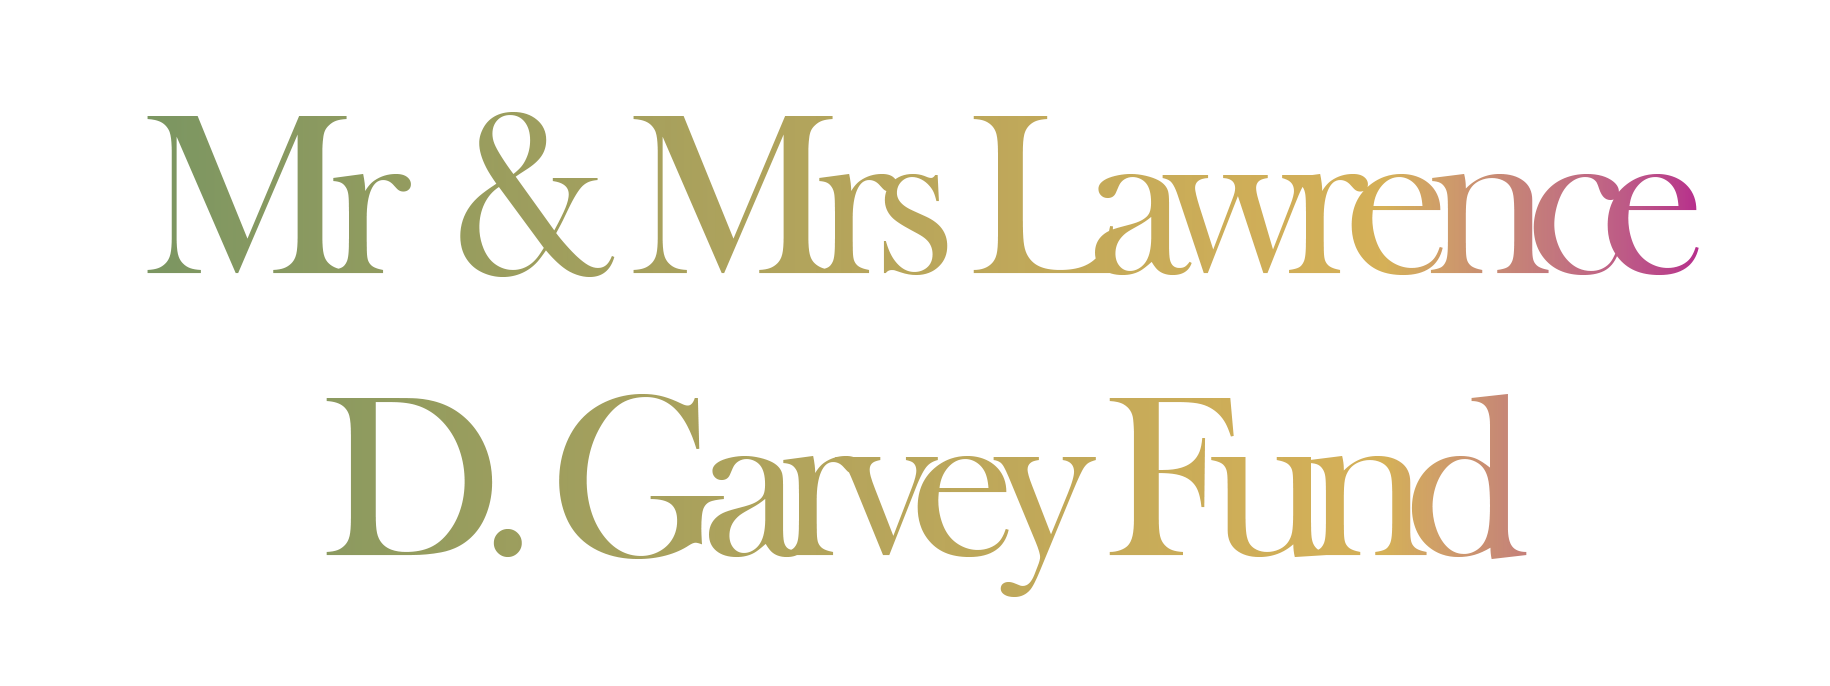 Mr. & Mrs. Lawrence D. Garvey Fund